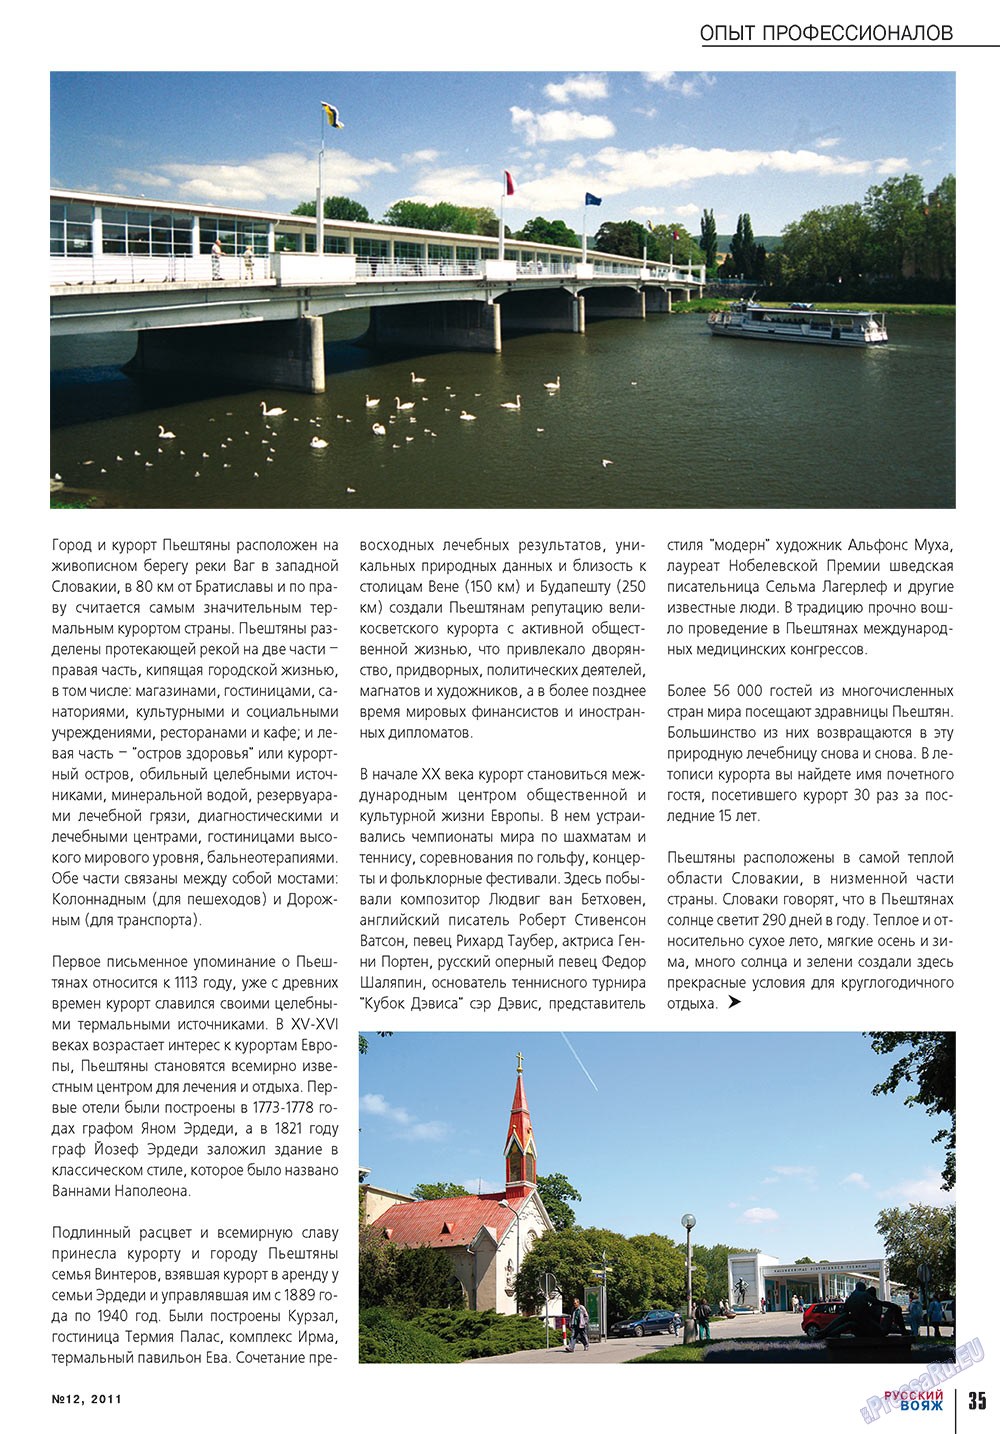 Русский вояж (журнал). 2011 год, номер 12, стр. 35